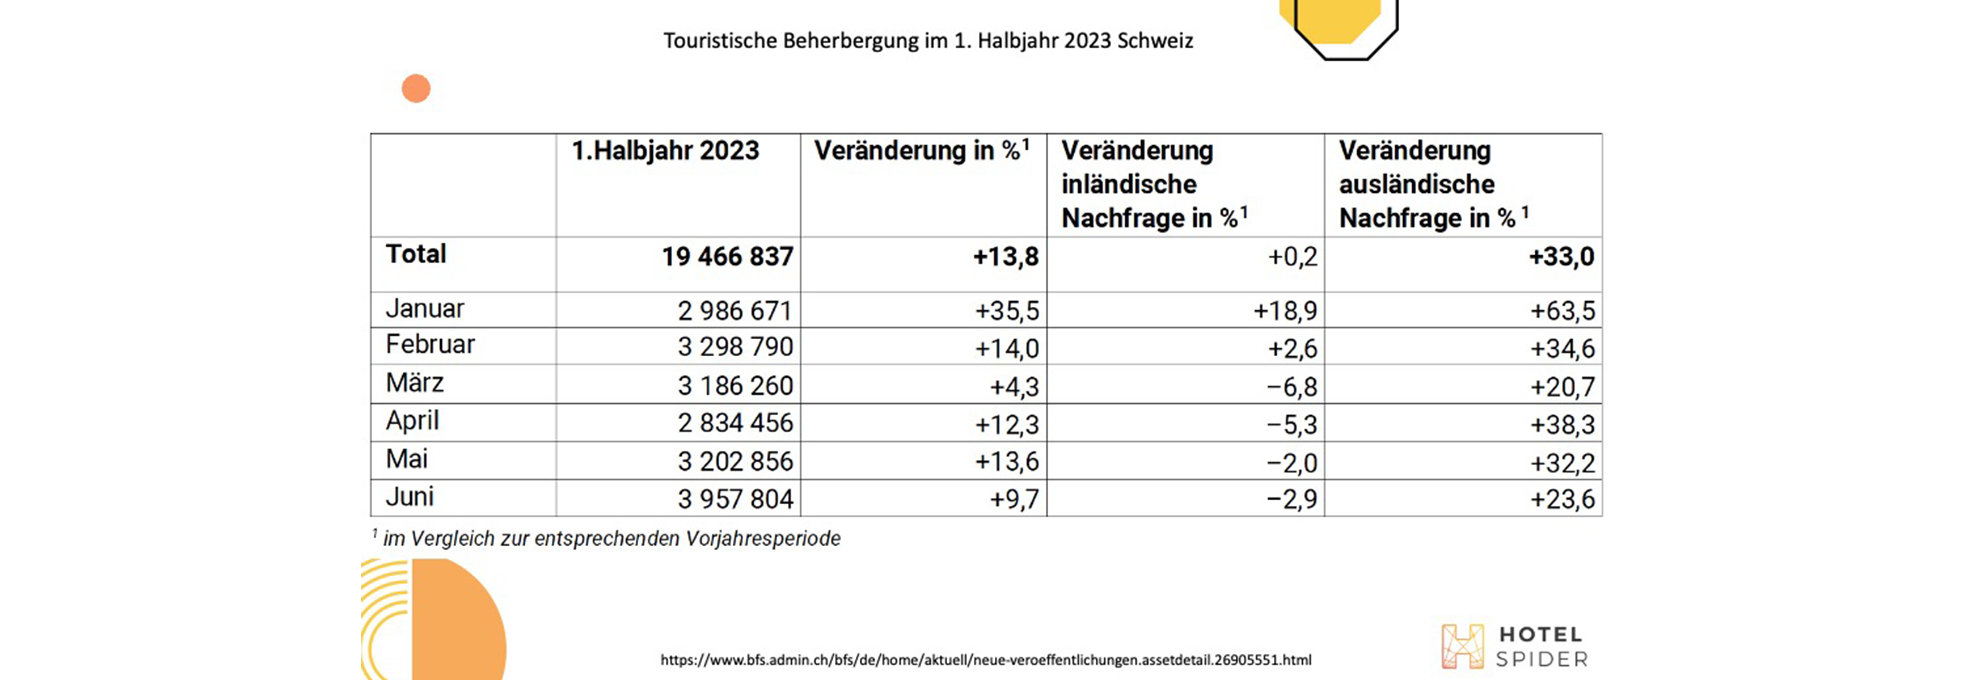 Évolution du nombre de nuitées en Suisse de 2022 à 2023. 